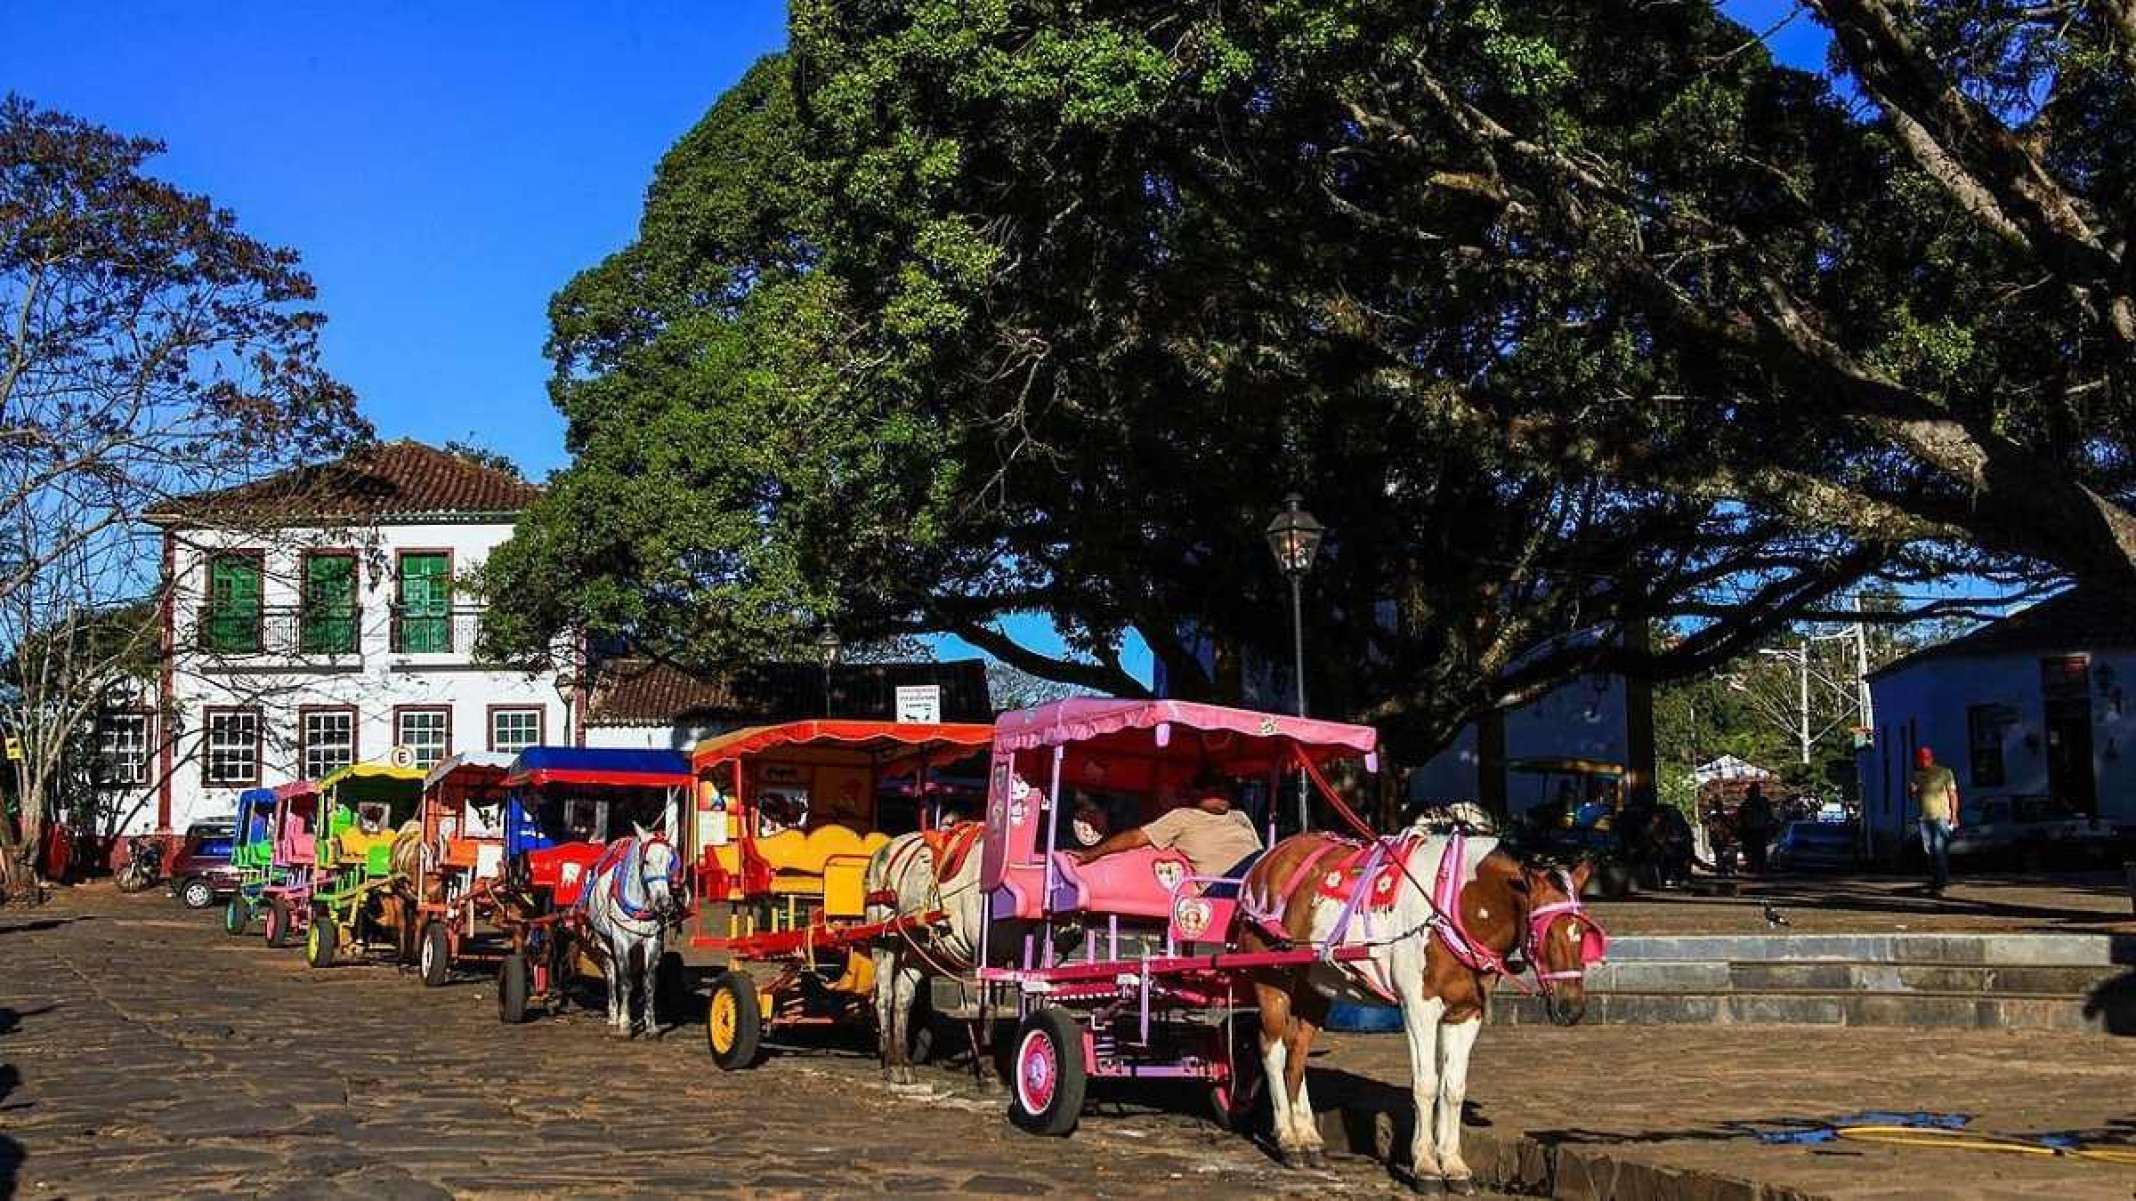 Sete charretes com cavalos na frente estão enfileiradas ao lado de praça em Tiradentes. A praça possui duas grandes árvores e ao fundo é possível ver prédio histórico na cor branca